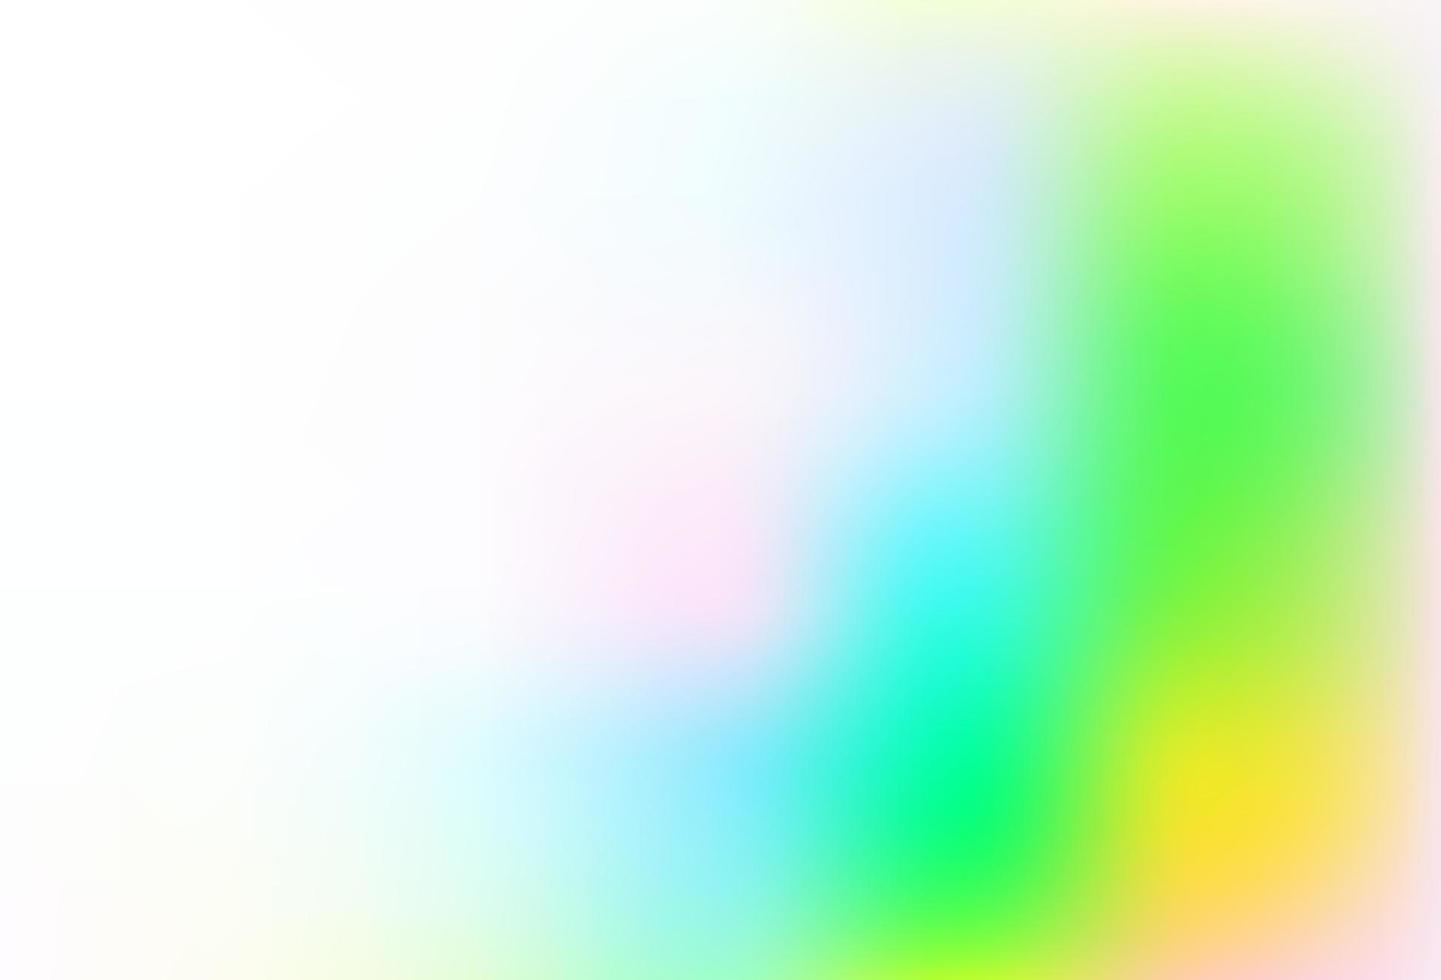 ljus flerfärgad, regnbåge vektor glänsande bokeh mönster.